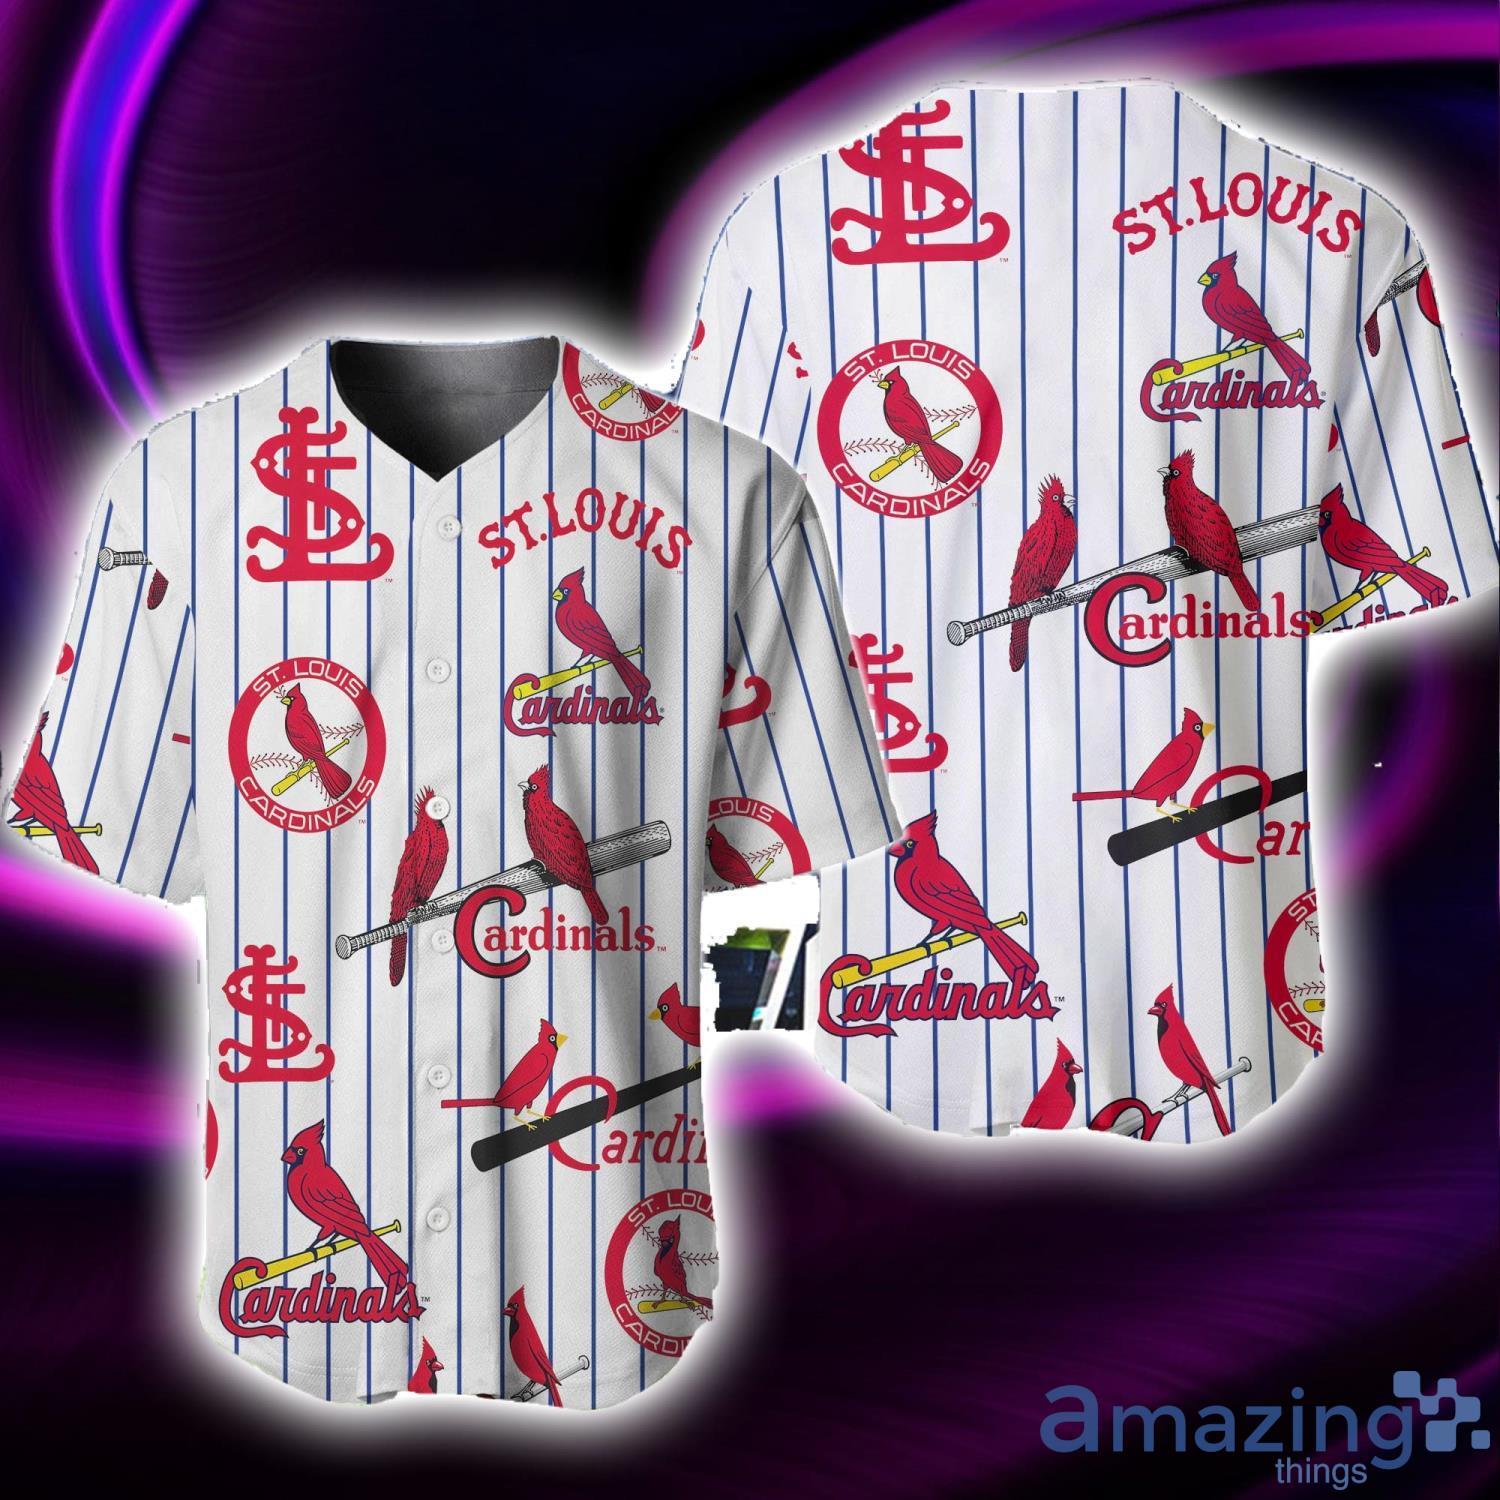 St. Louis Cardinals - Cheap MLB Baseball Jerseys